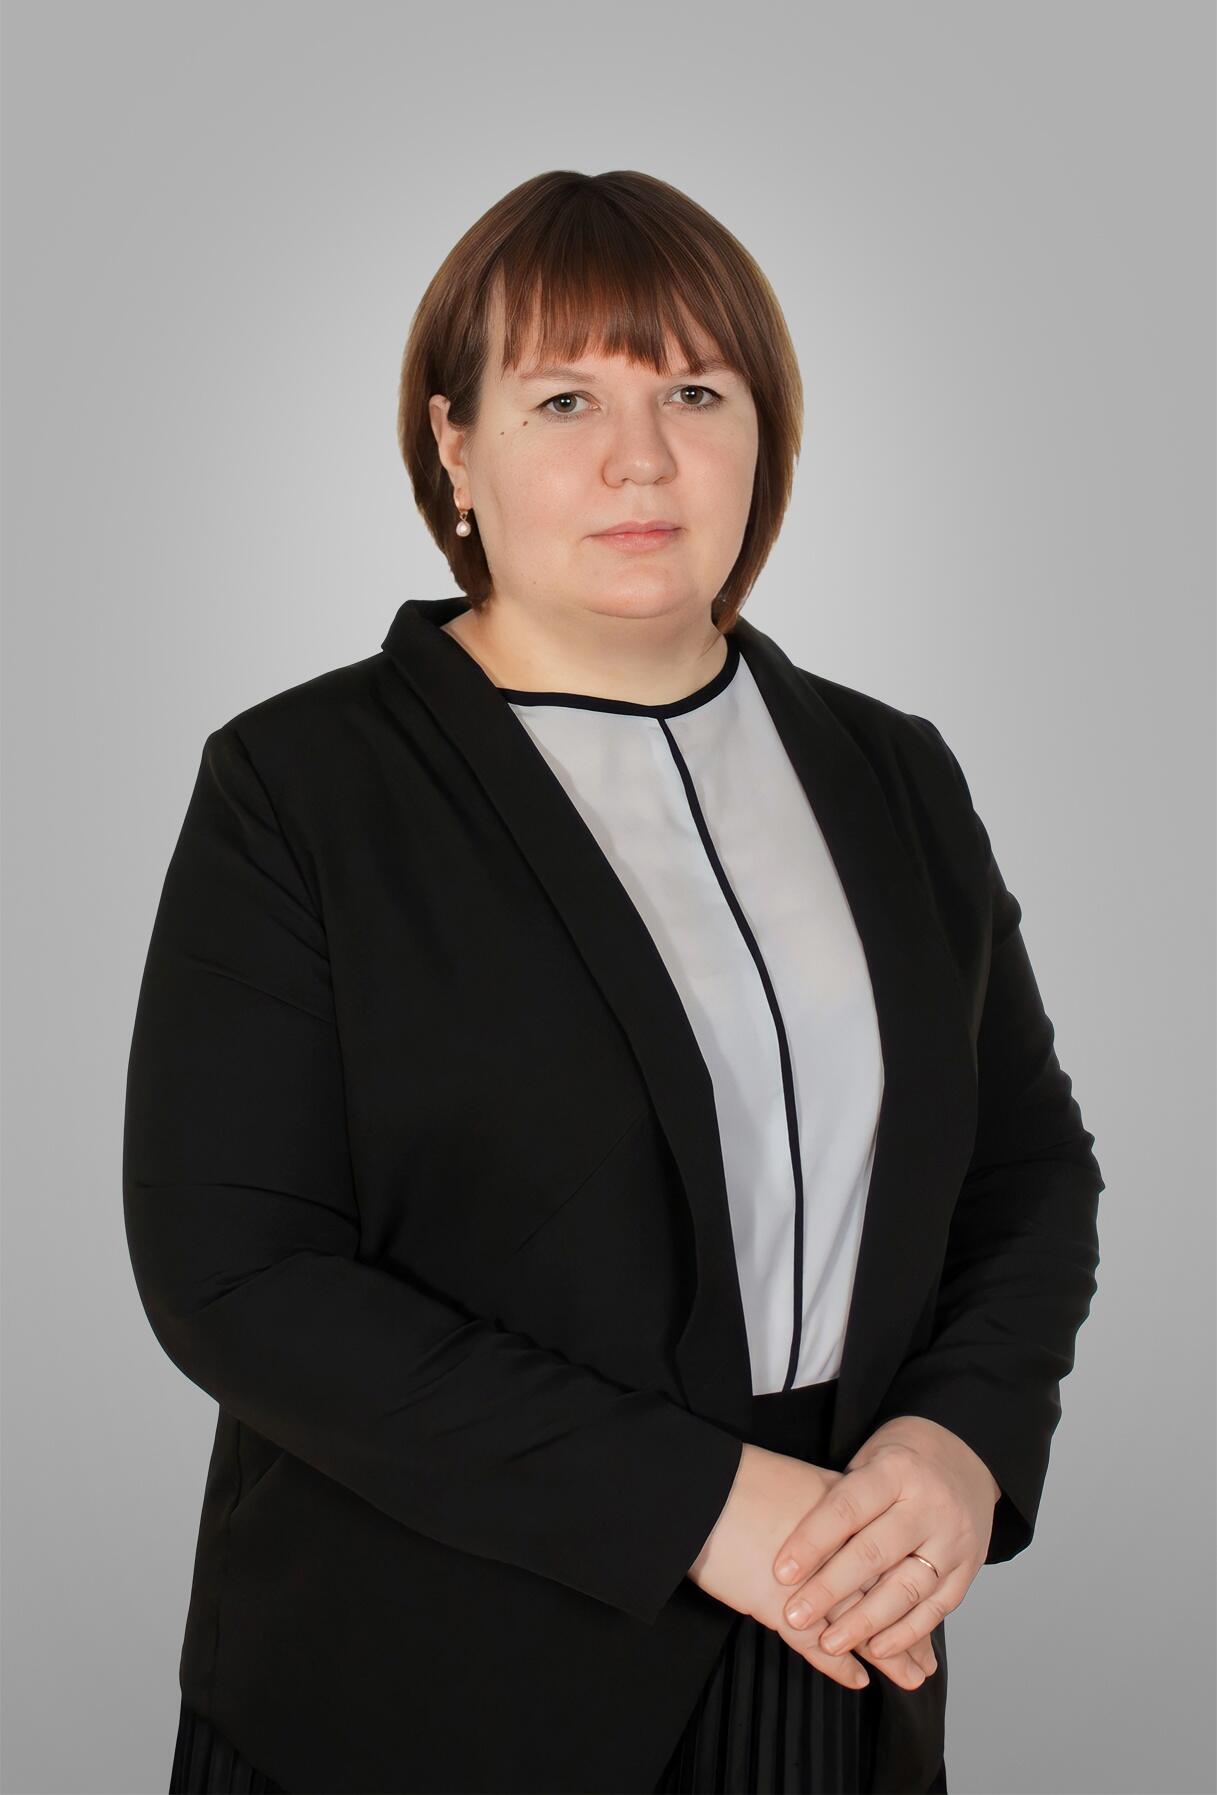 Китесашвили Алена Валерьевна